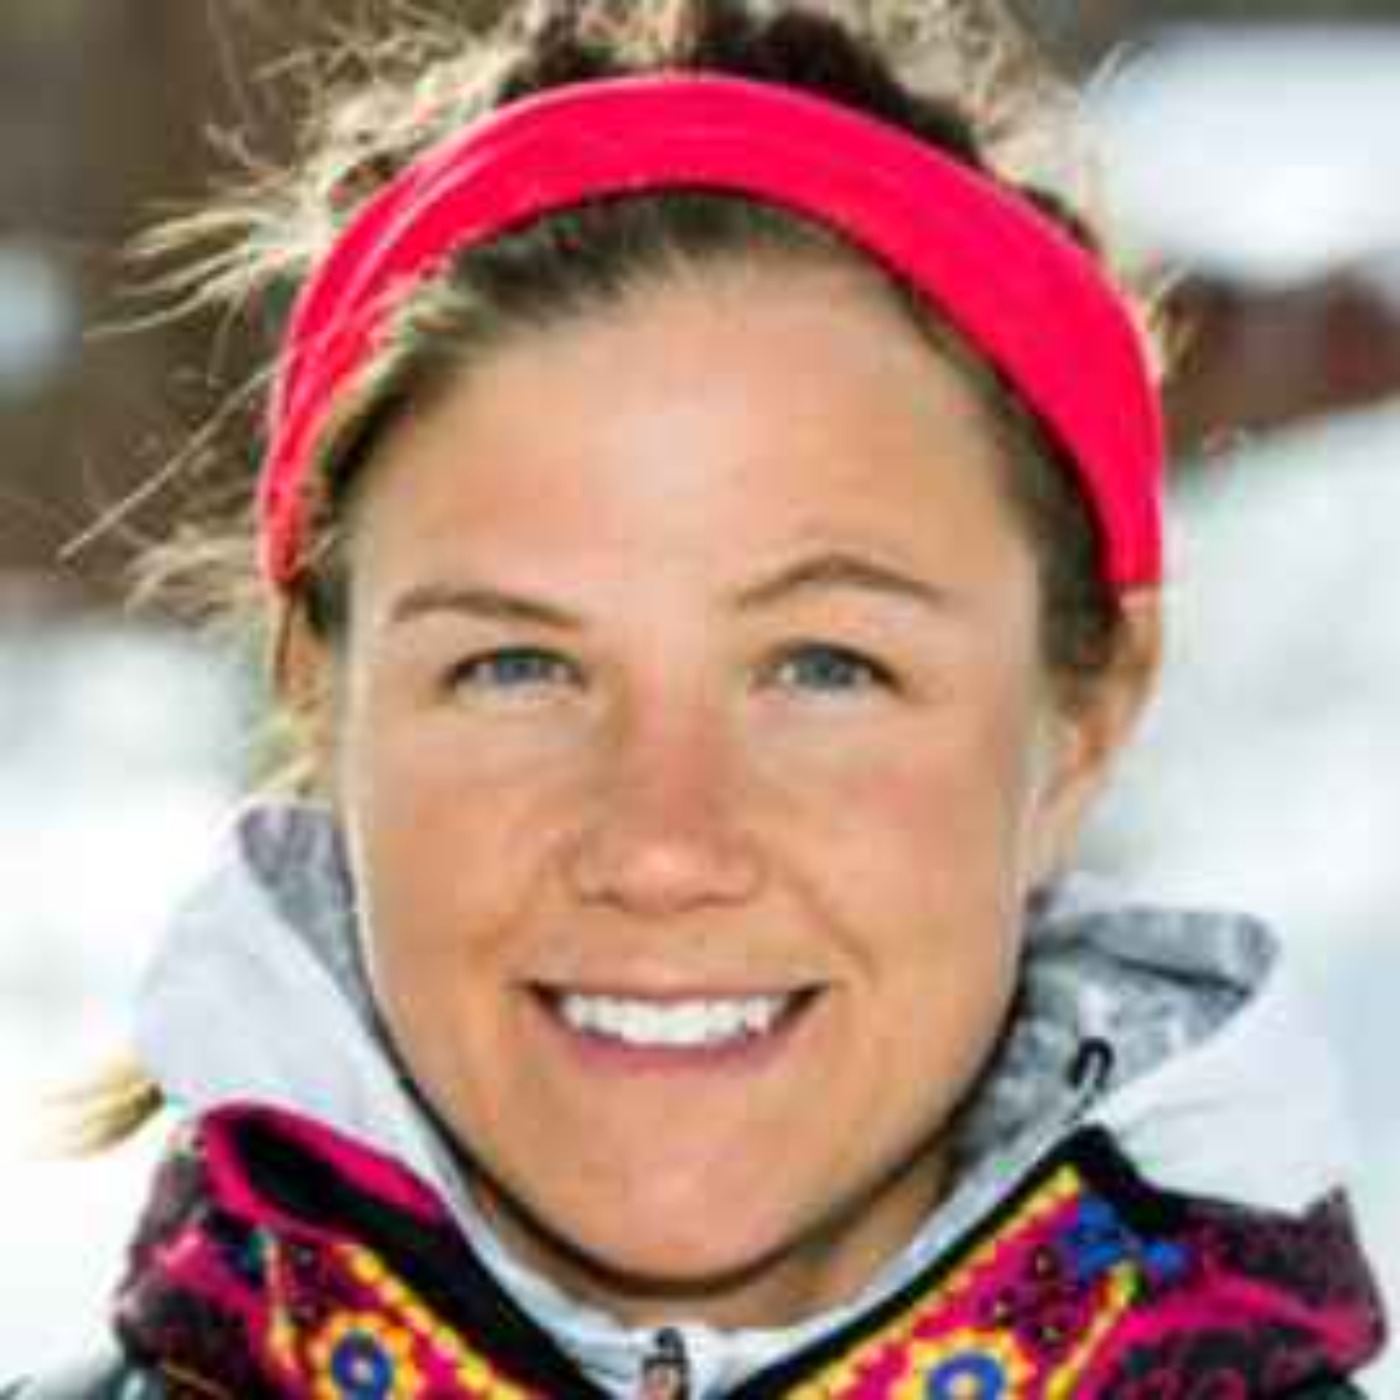 Emelie Forsberg-Skyrunning världsmästaren, äventyraren och Skidalpinisten om livet